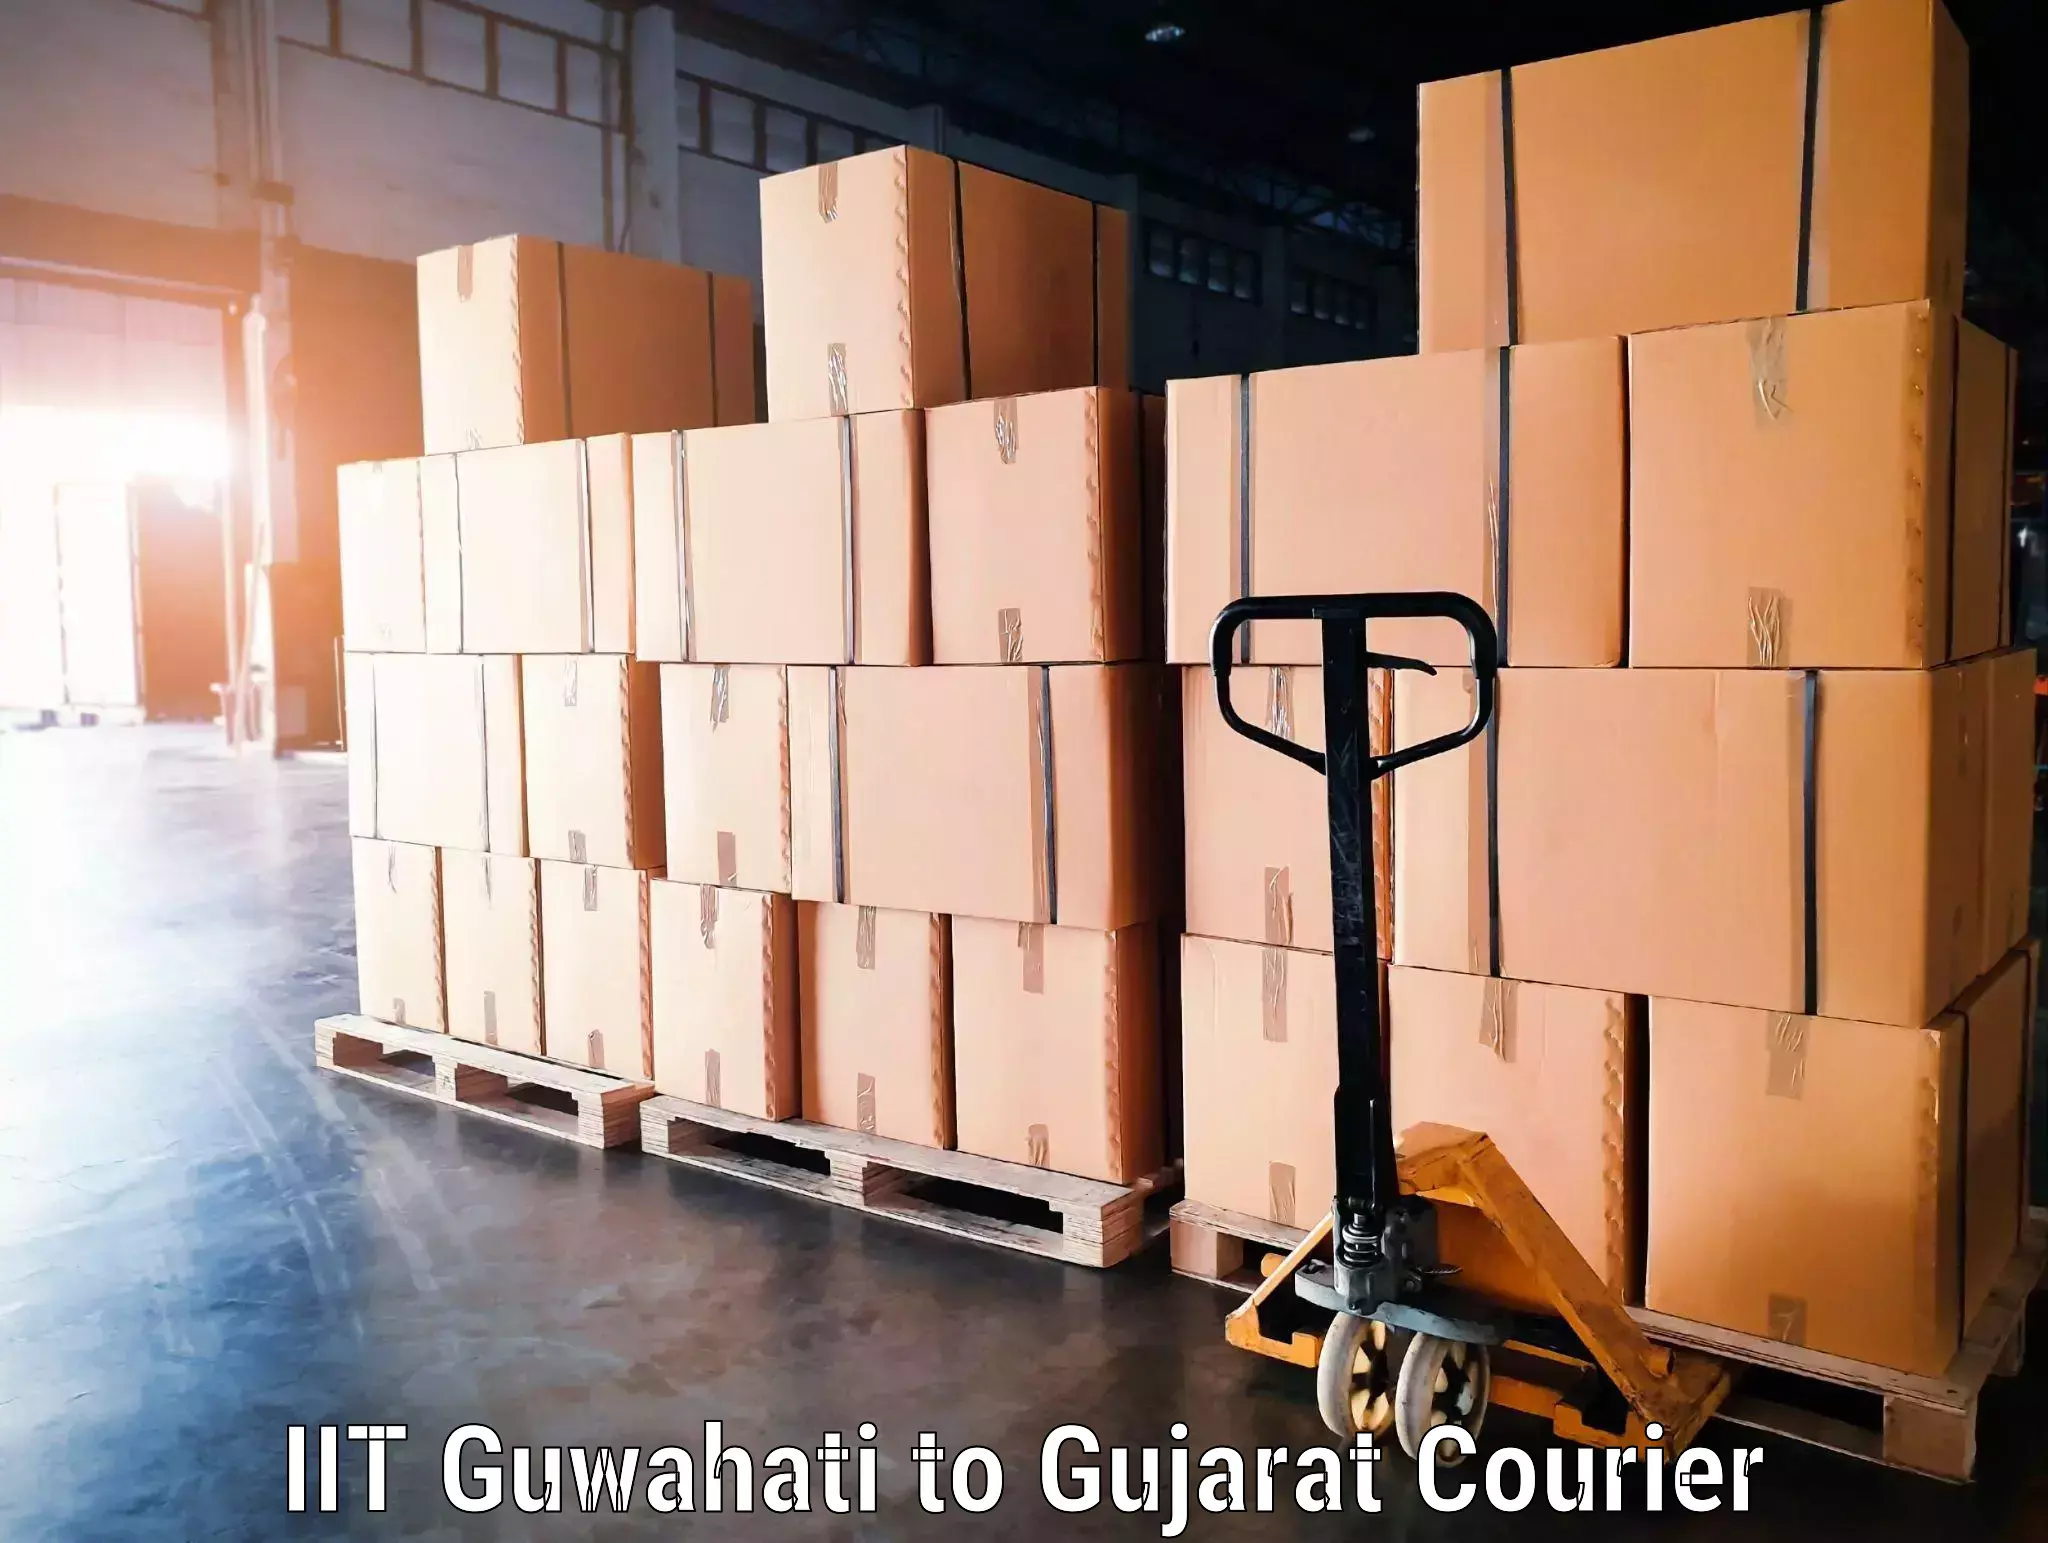 Luggage shipment tracking in IIT Guwahati to Gujarat